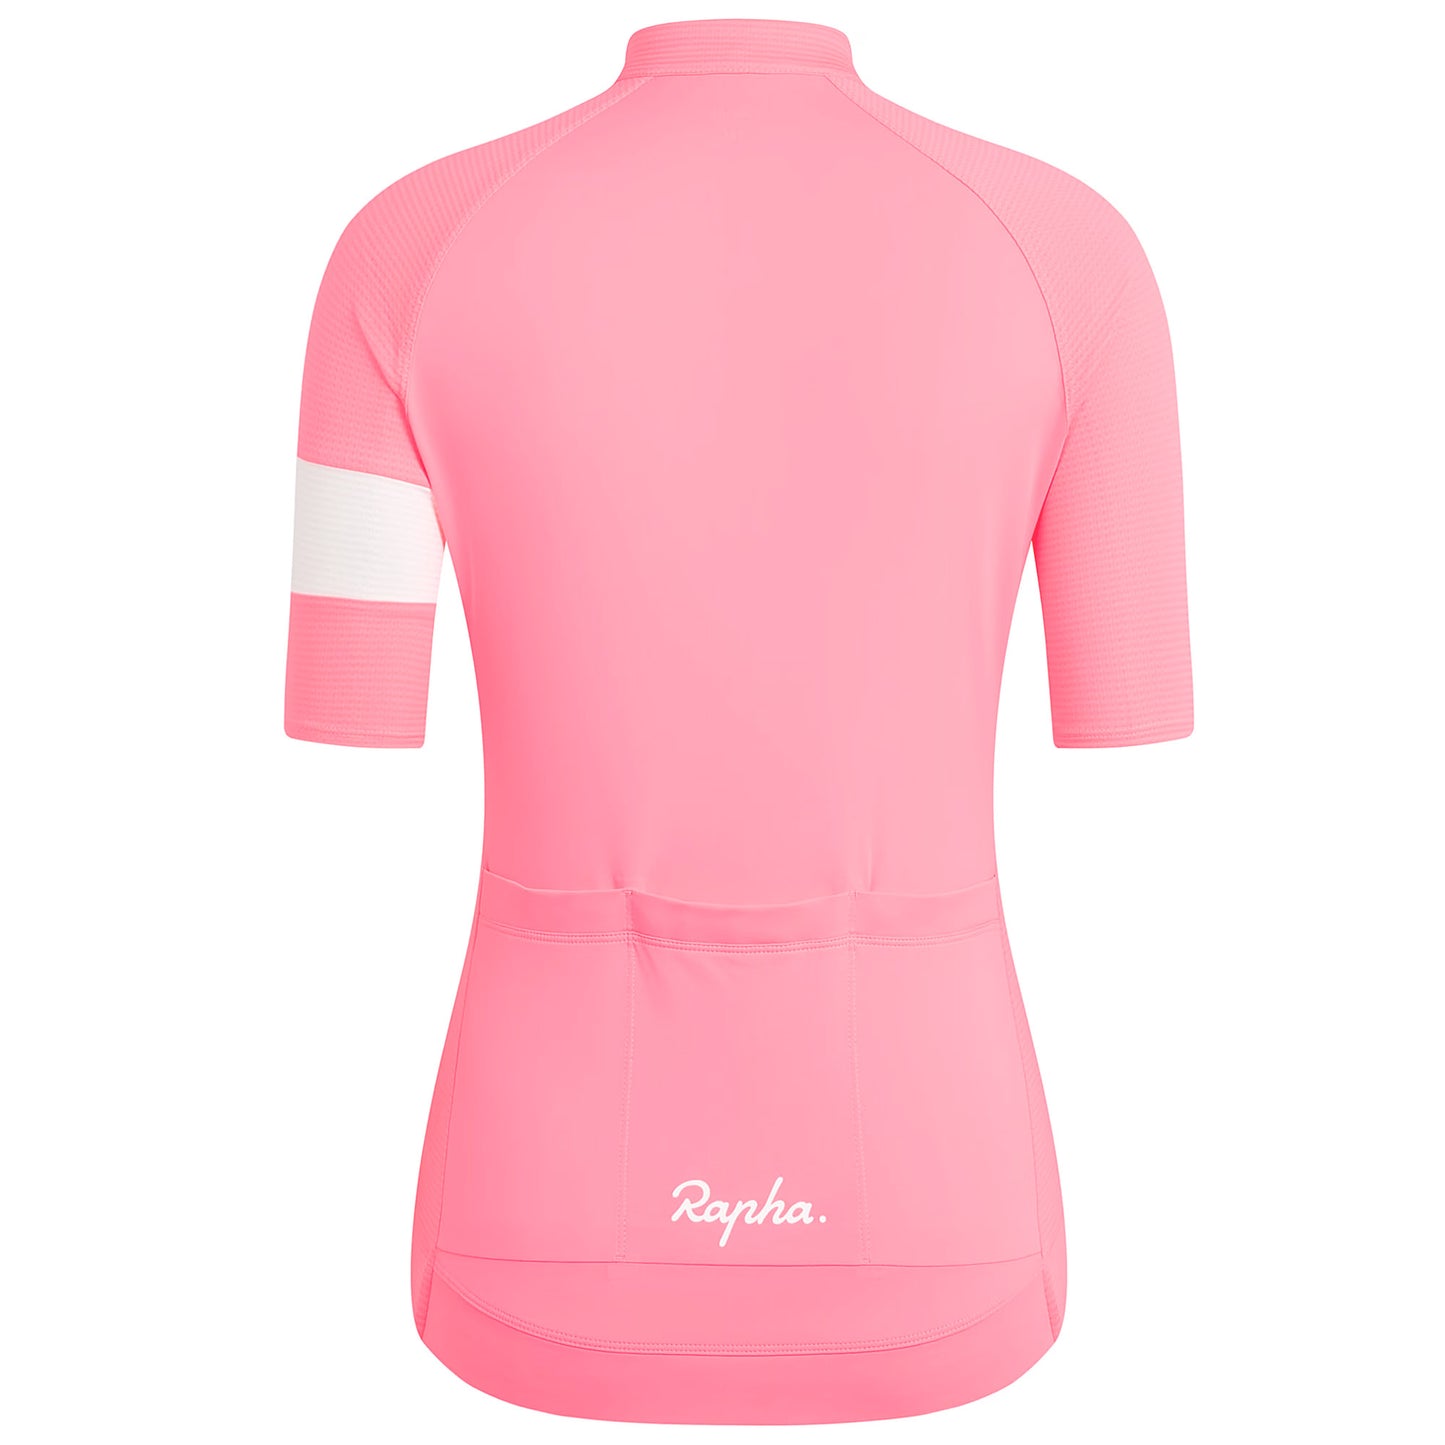 Rapha Women's Core Lightweight Jersey, High-Vis Pink